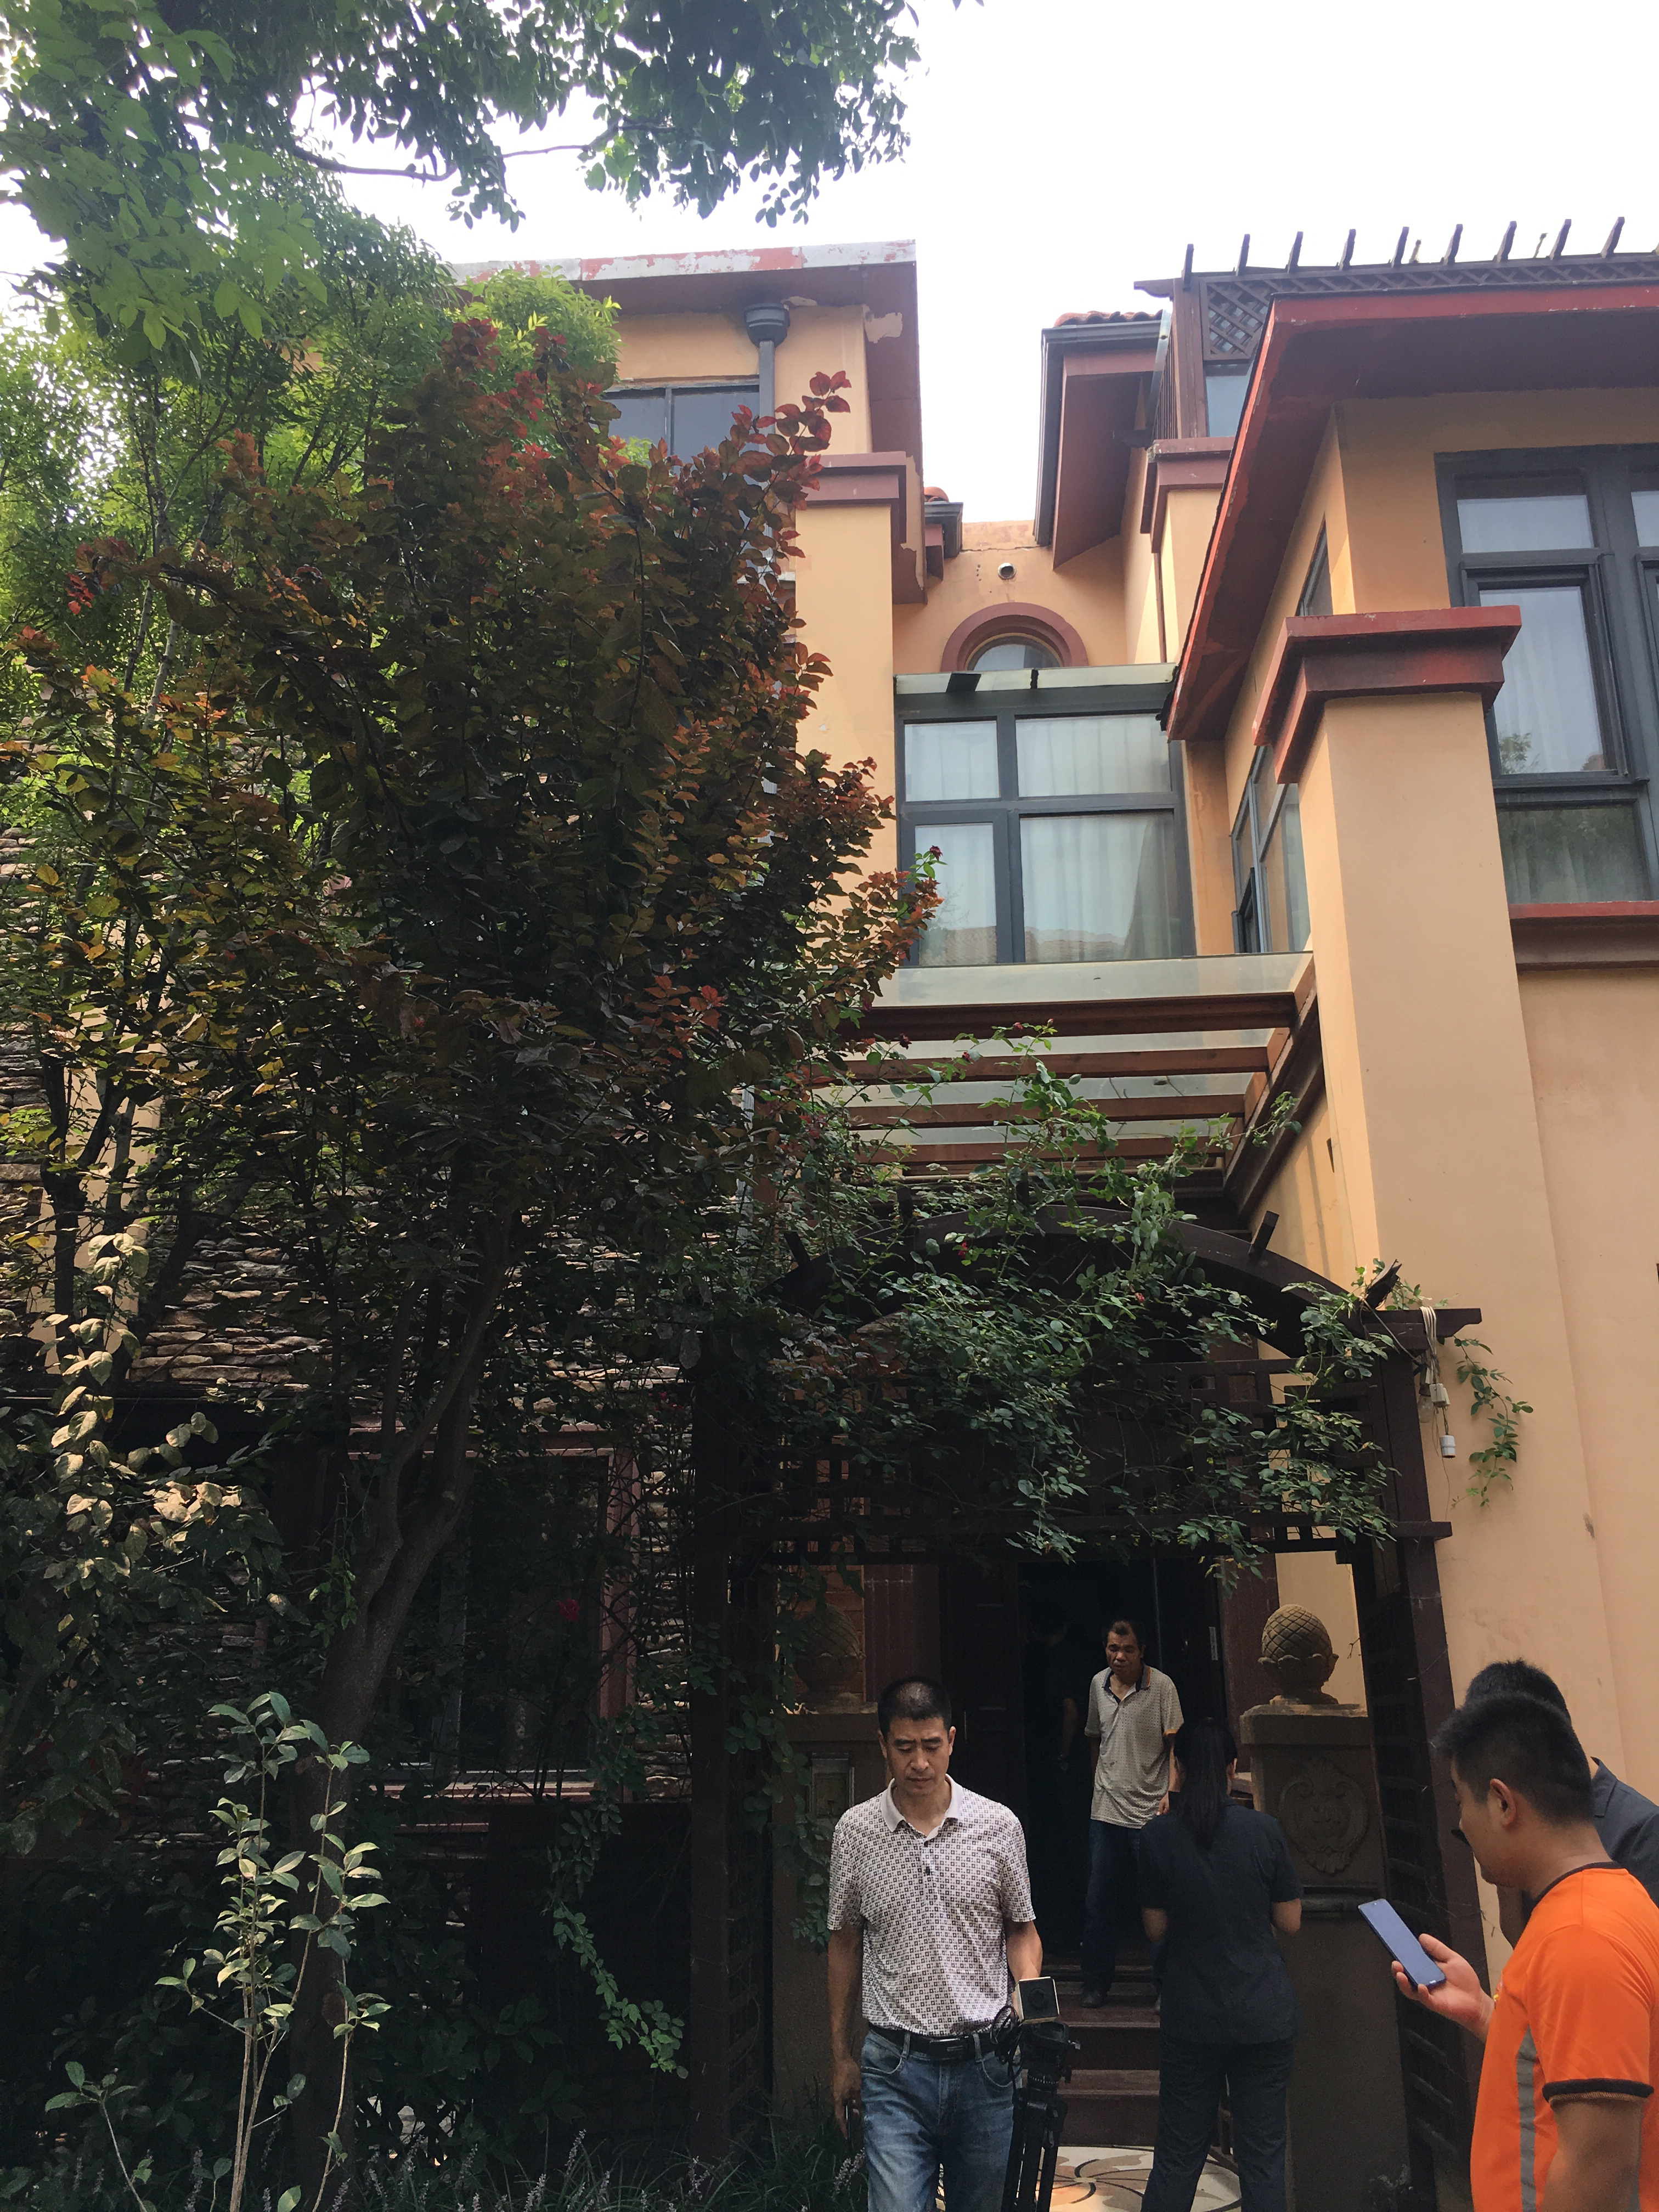 随后,记者跟随执行干警对整栋别墅进行了查看,别墅位于郑州市惠济区